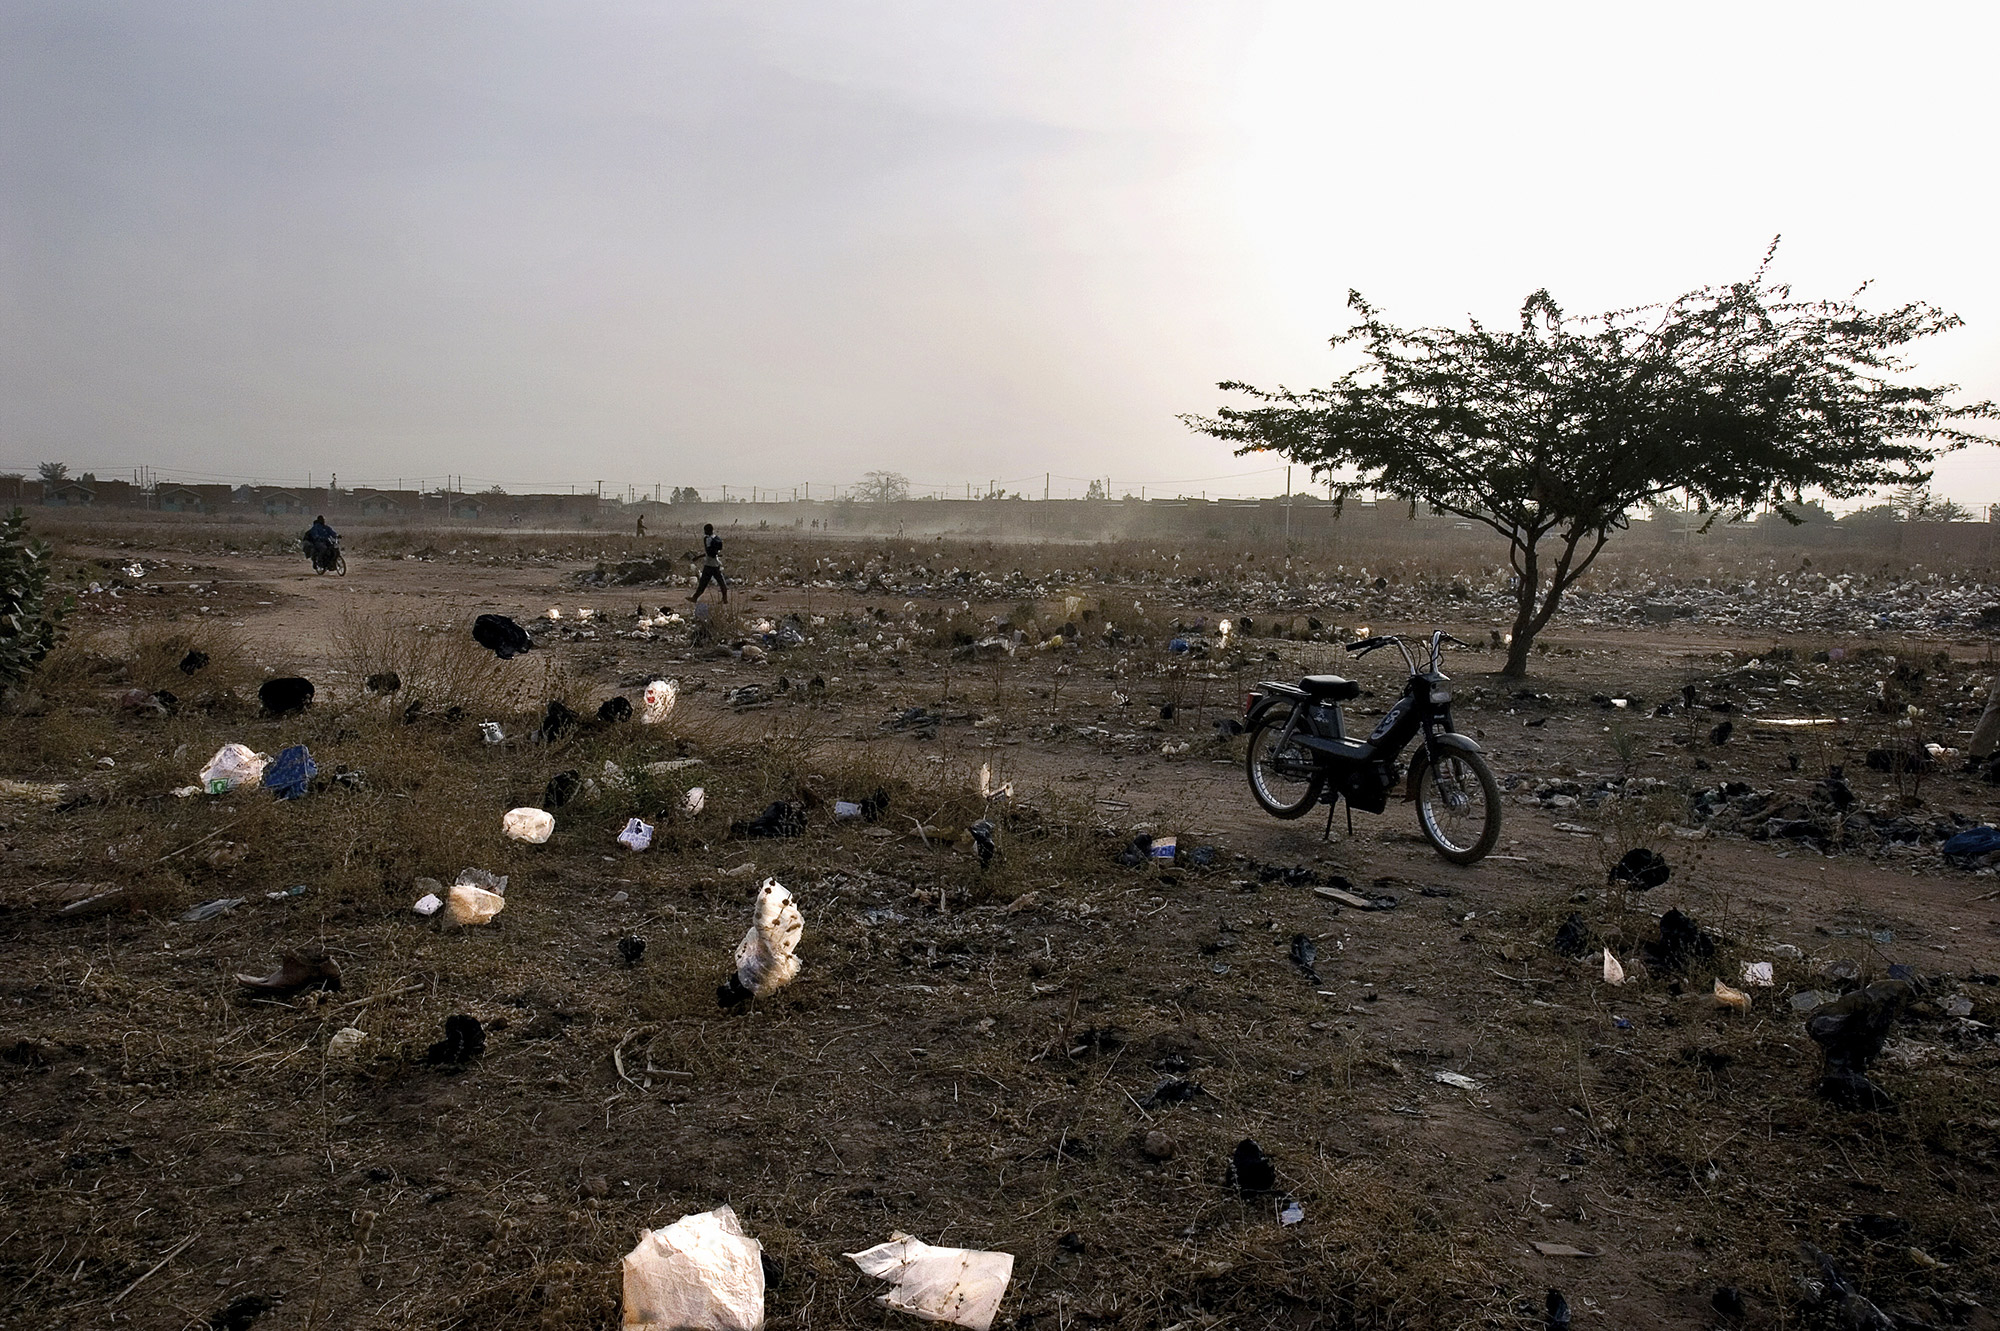 Terrain abandonné dans le quartier de la "patte d'oie", Ouagadougou, Burkina Faso, 2007.